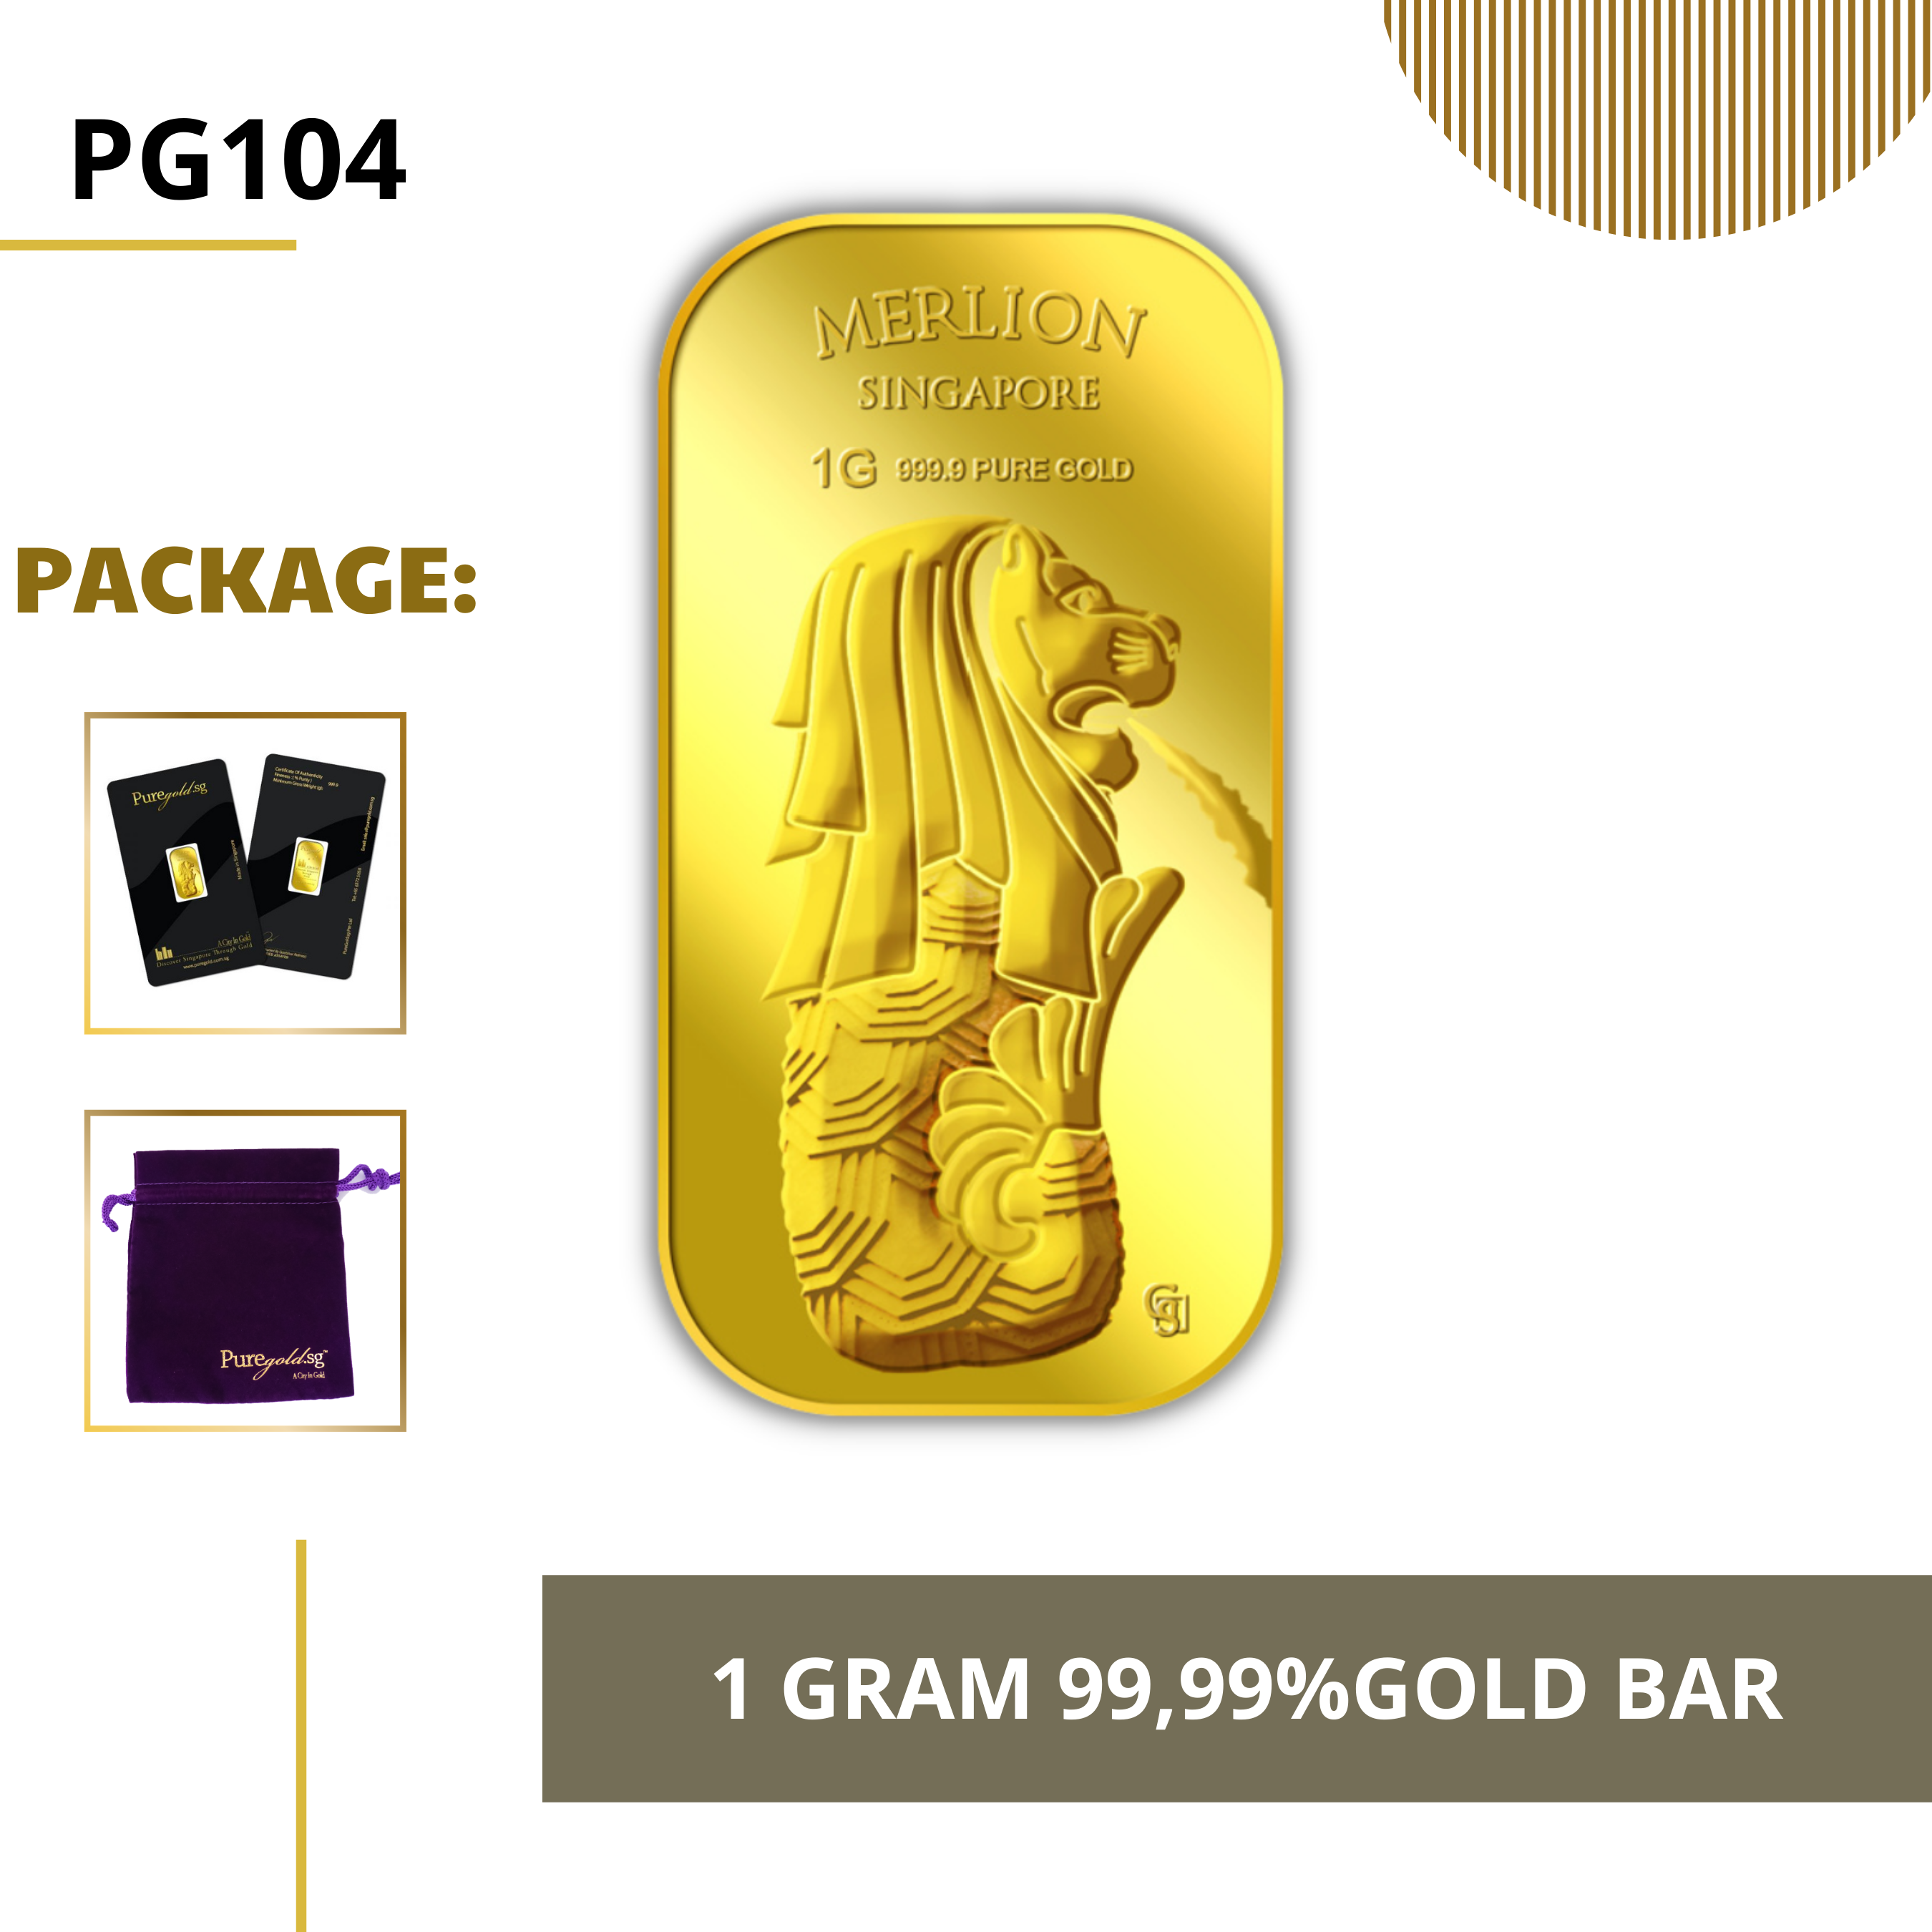 PURE GOLD 99.99% ทองคำแท่ง / 1gram Merlion Fountain gold bar/ ทองคำแท้จากสิงคโปร์ / ทองคำ 1 กรัม / ทอง 99.99% *การันตีทองแท้*